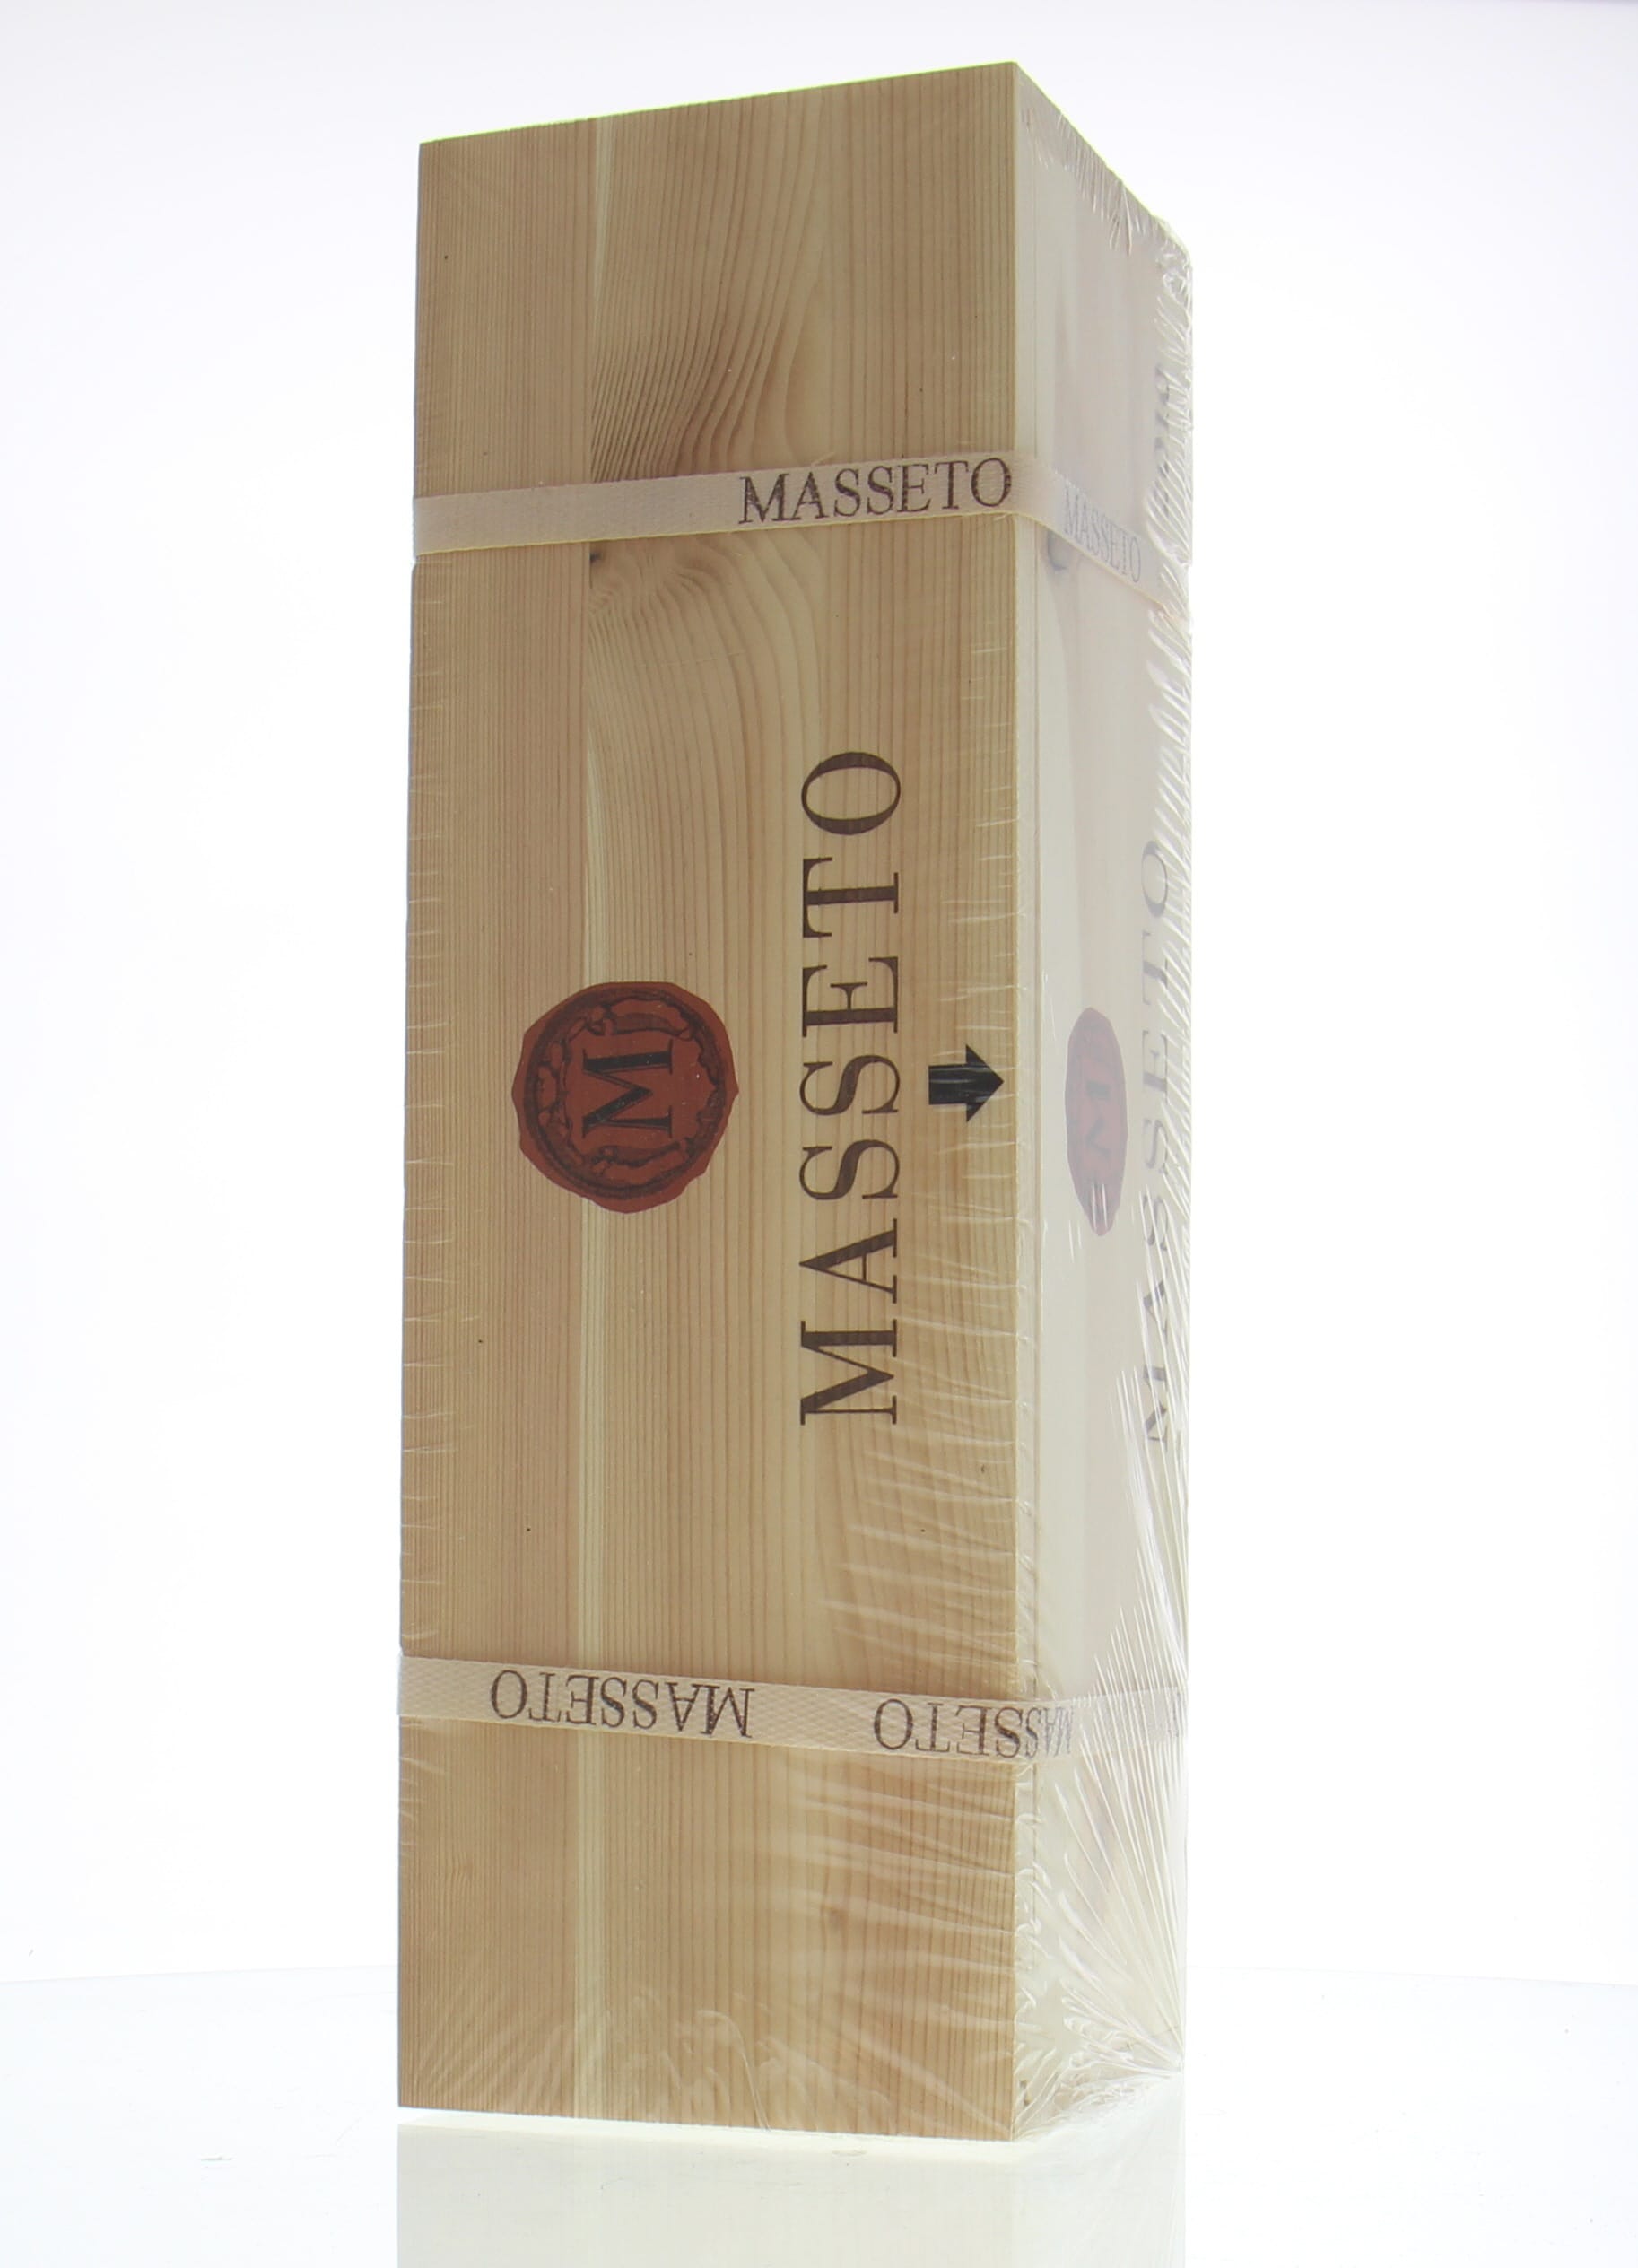 Tenuta dell' Ornellaia - Masseto 2010 From Original Wooden Case